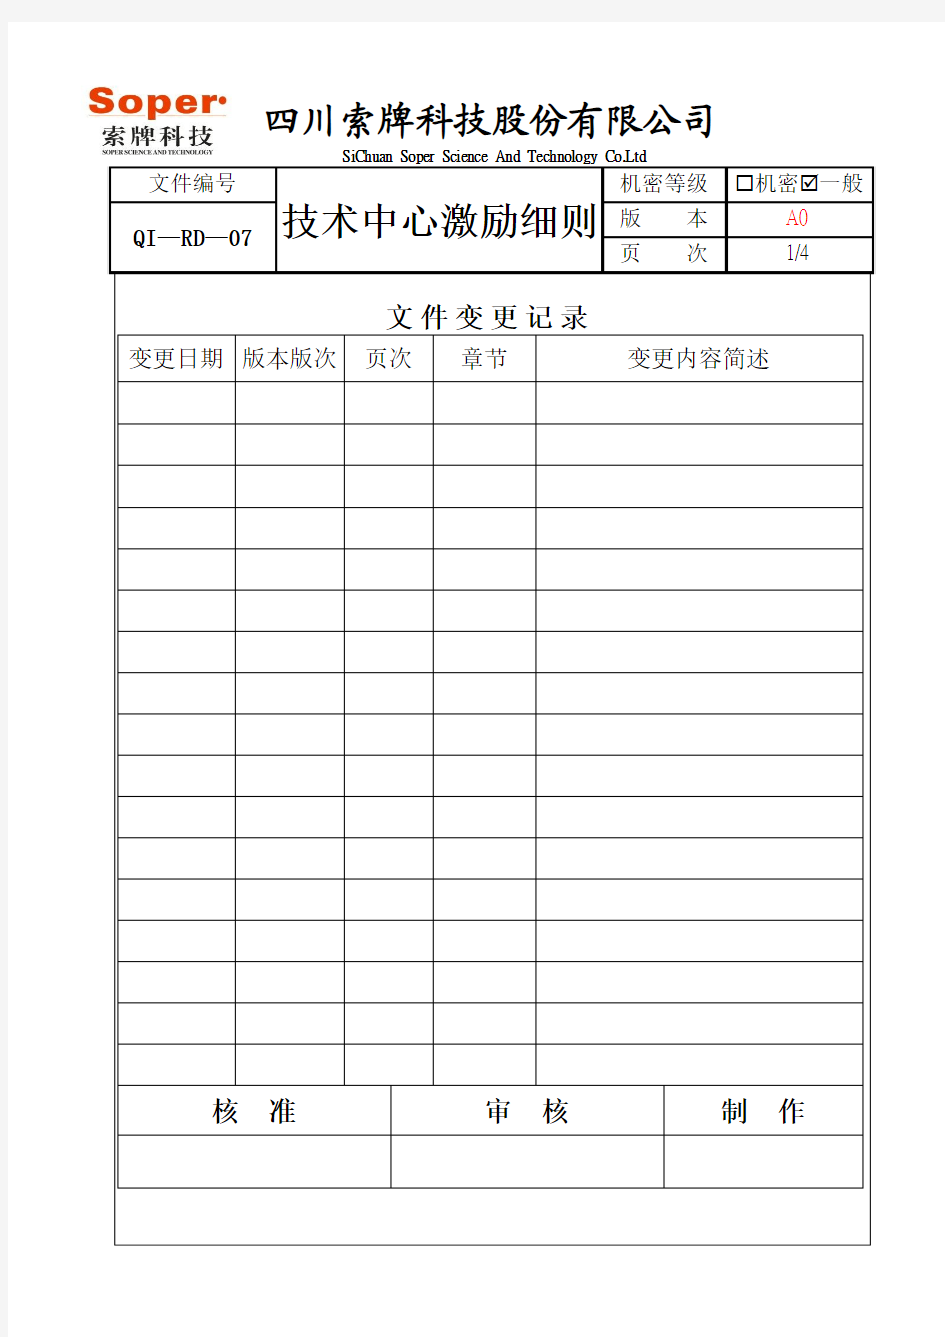 QI—RD—07技术中心激励细则 - 2013.9.16